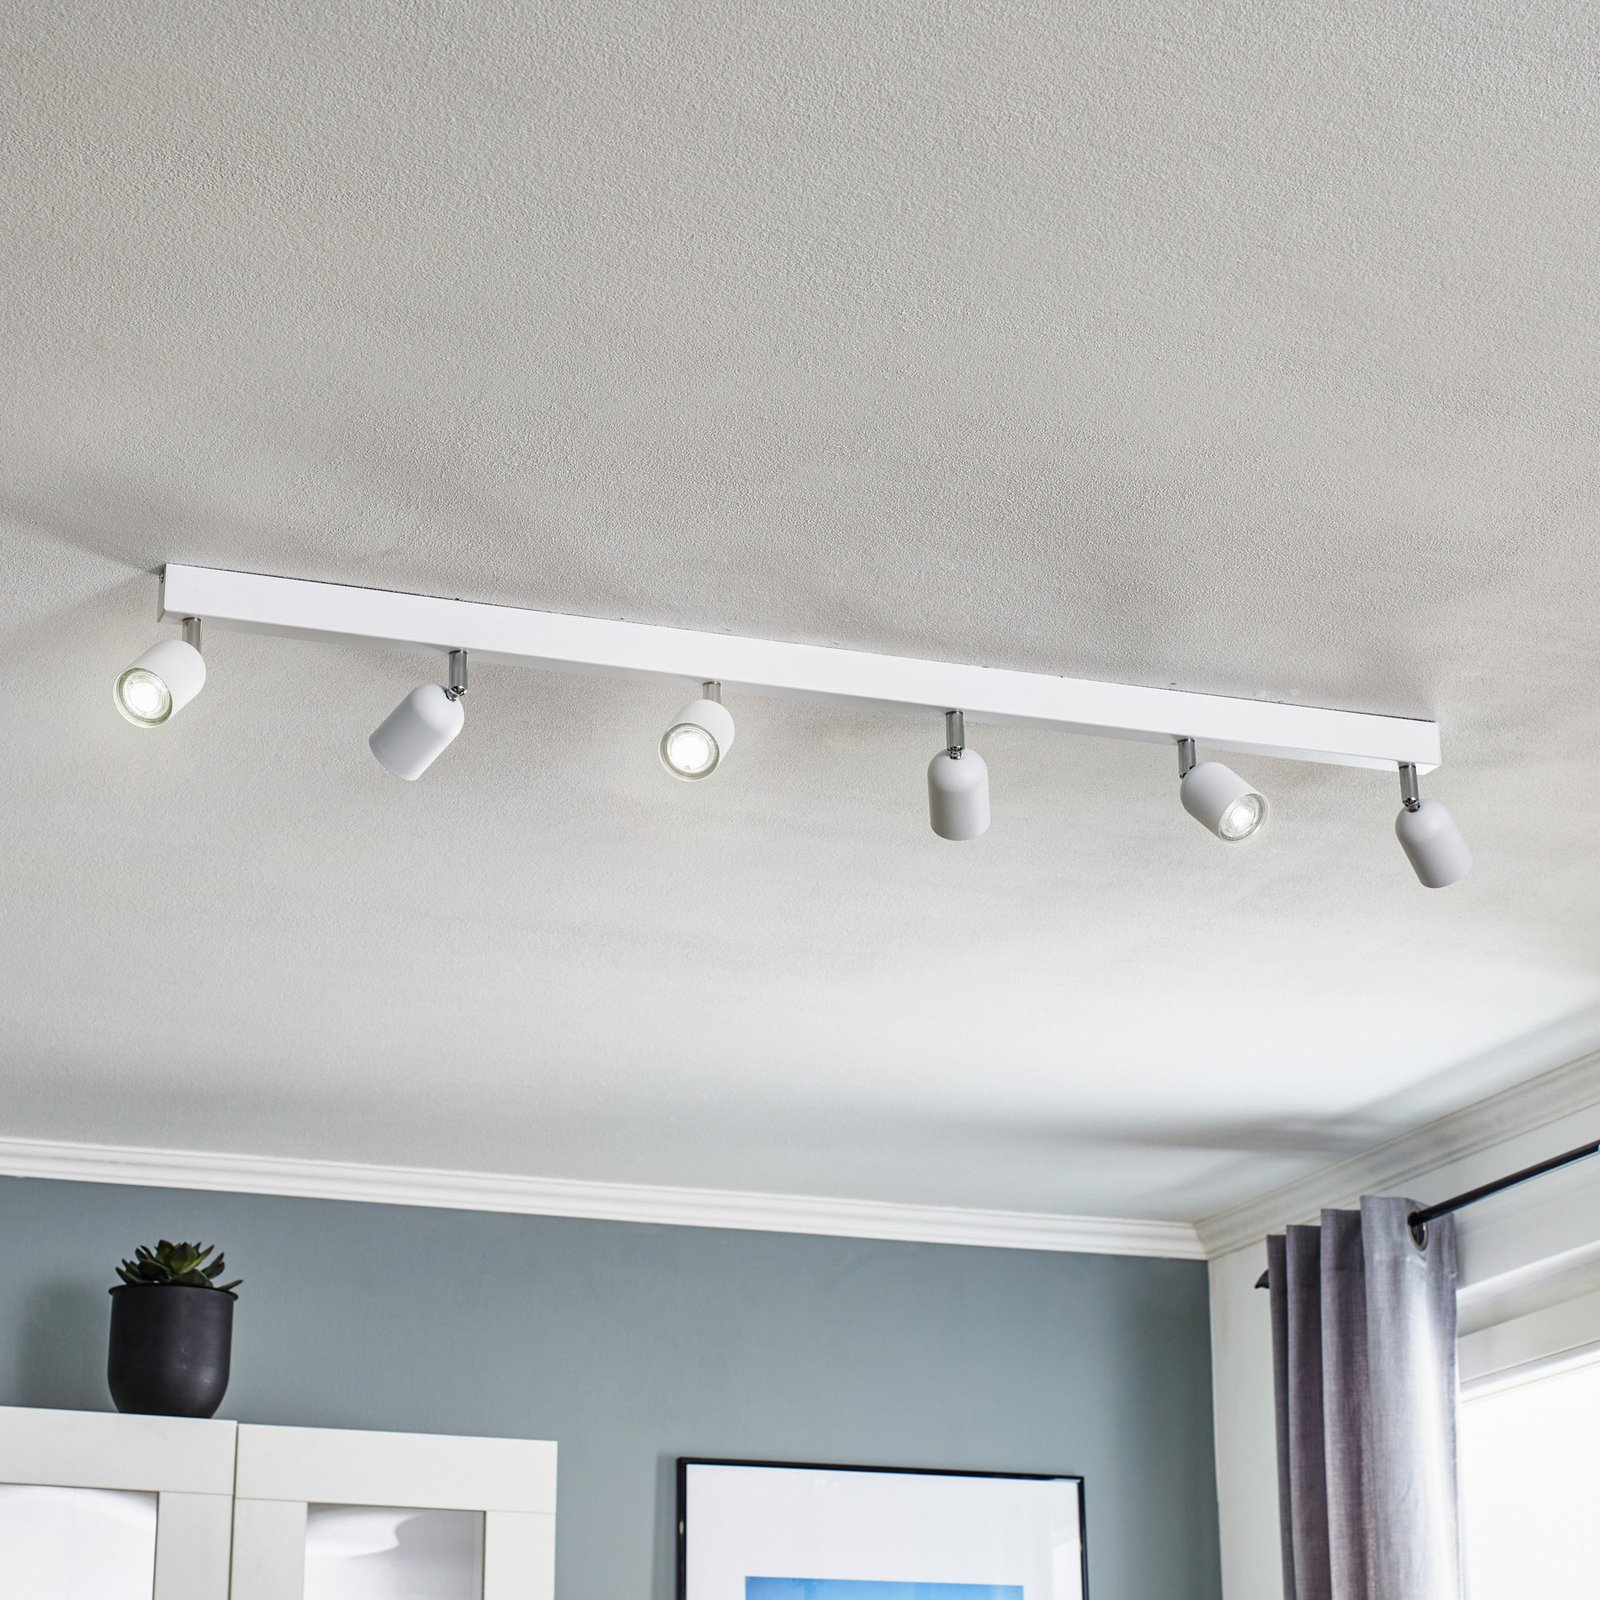 Top ceiling spotlight, 6-bulb, long, white